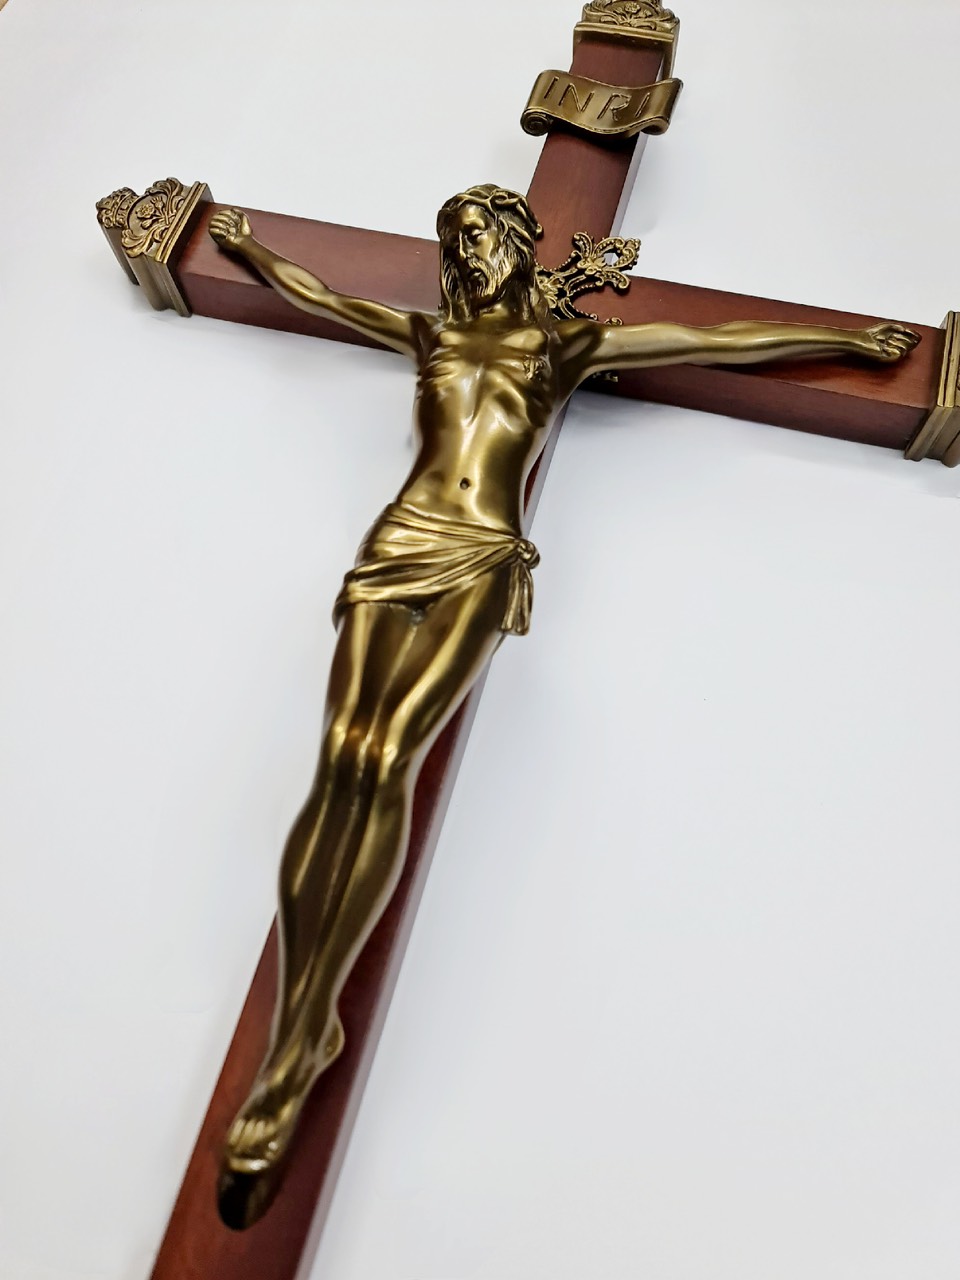 Chúa chịu chết Thánh Giá gỗ treo cao 60cm - Sản phẩm Công Giáo Tâm Đức - tượng đồng